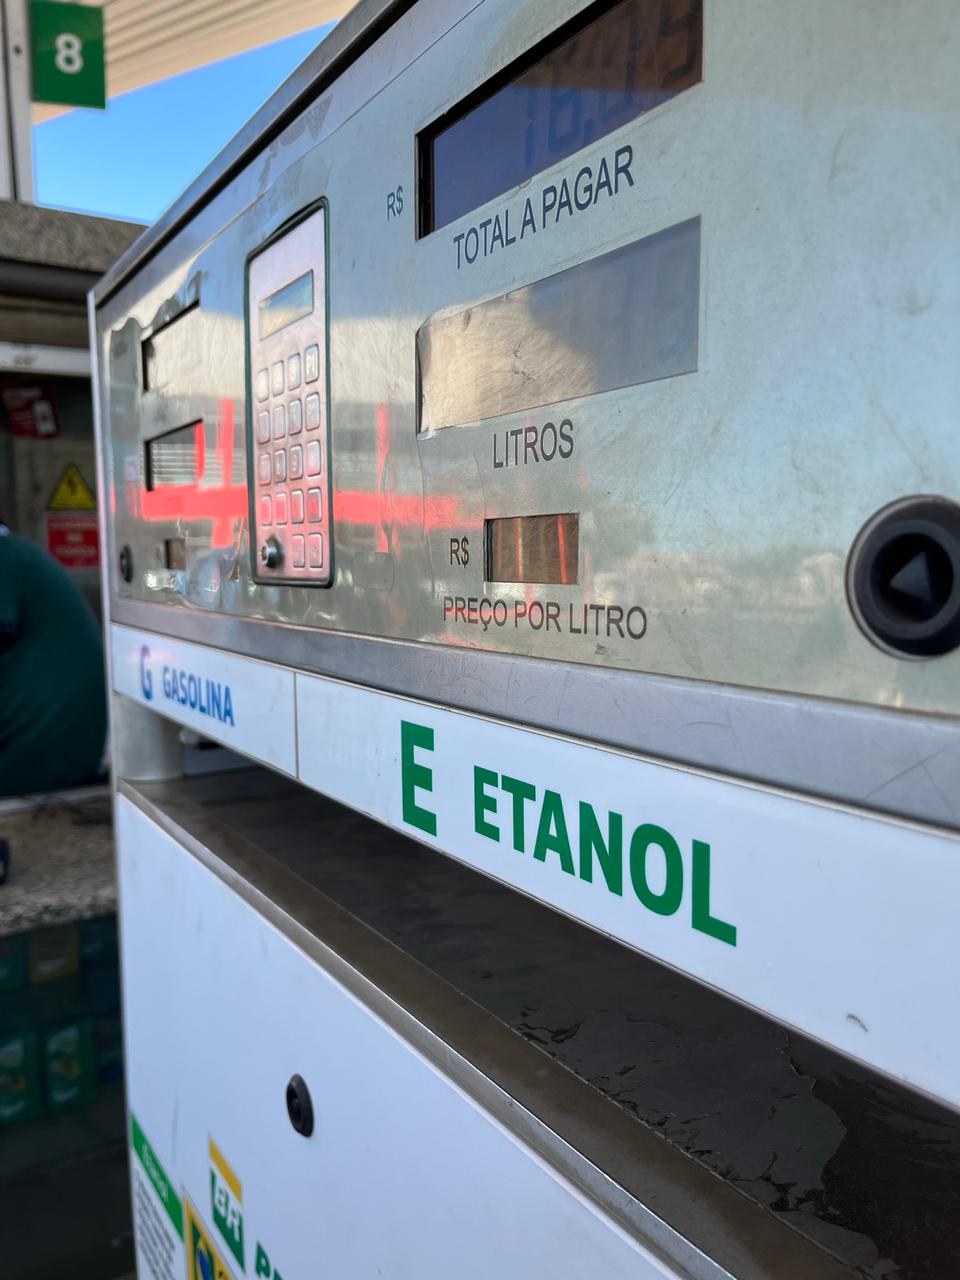 Venda de etanol hidratado pelos produtores ultrapassa 1,9 bilhão em dezembro